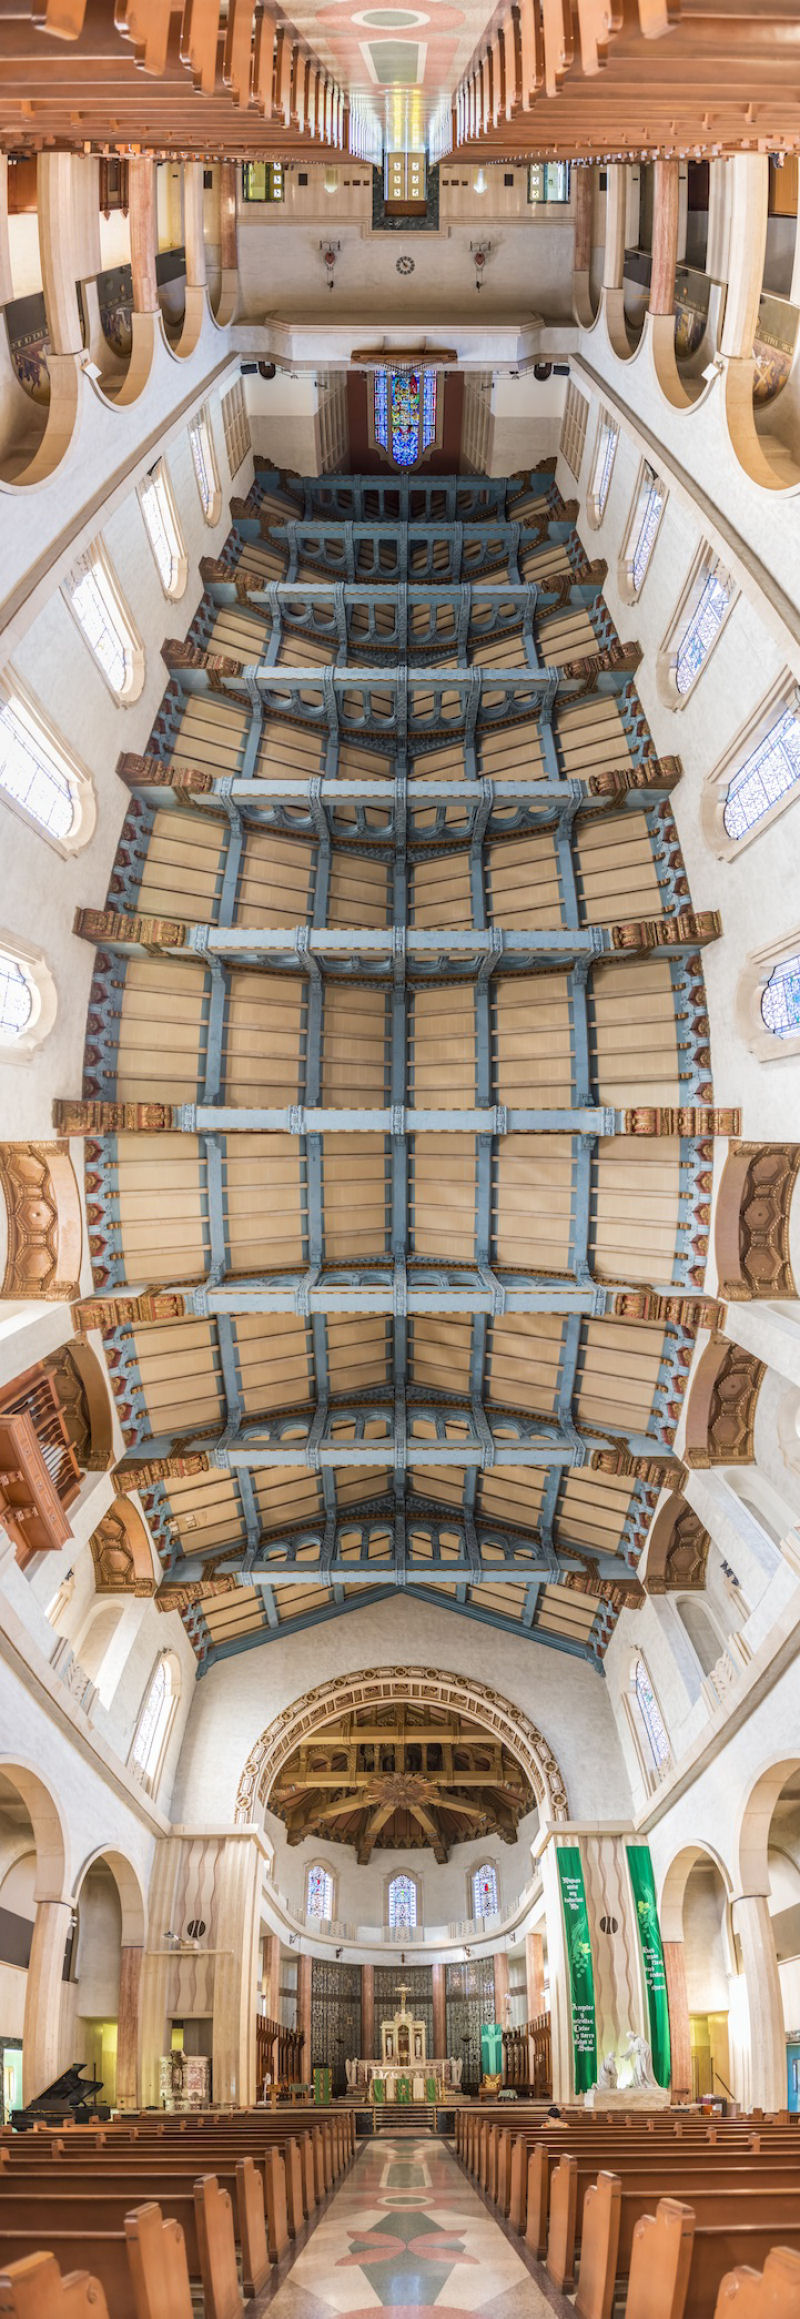 Novos panoramas verticais de igrejas por Richard Silver 03